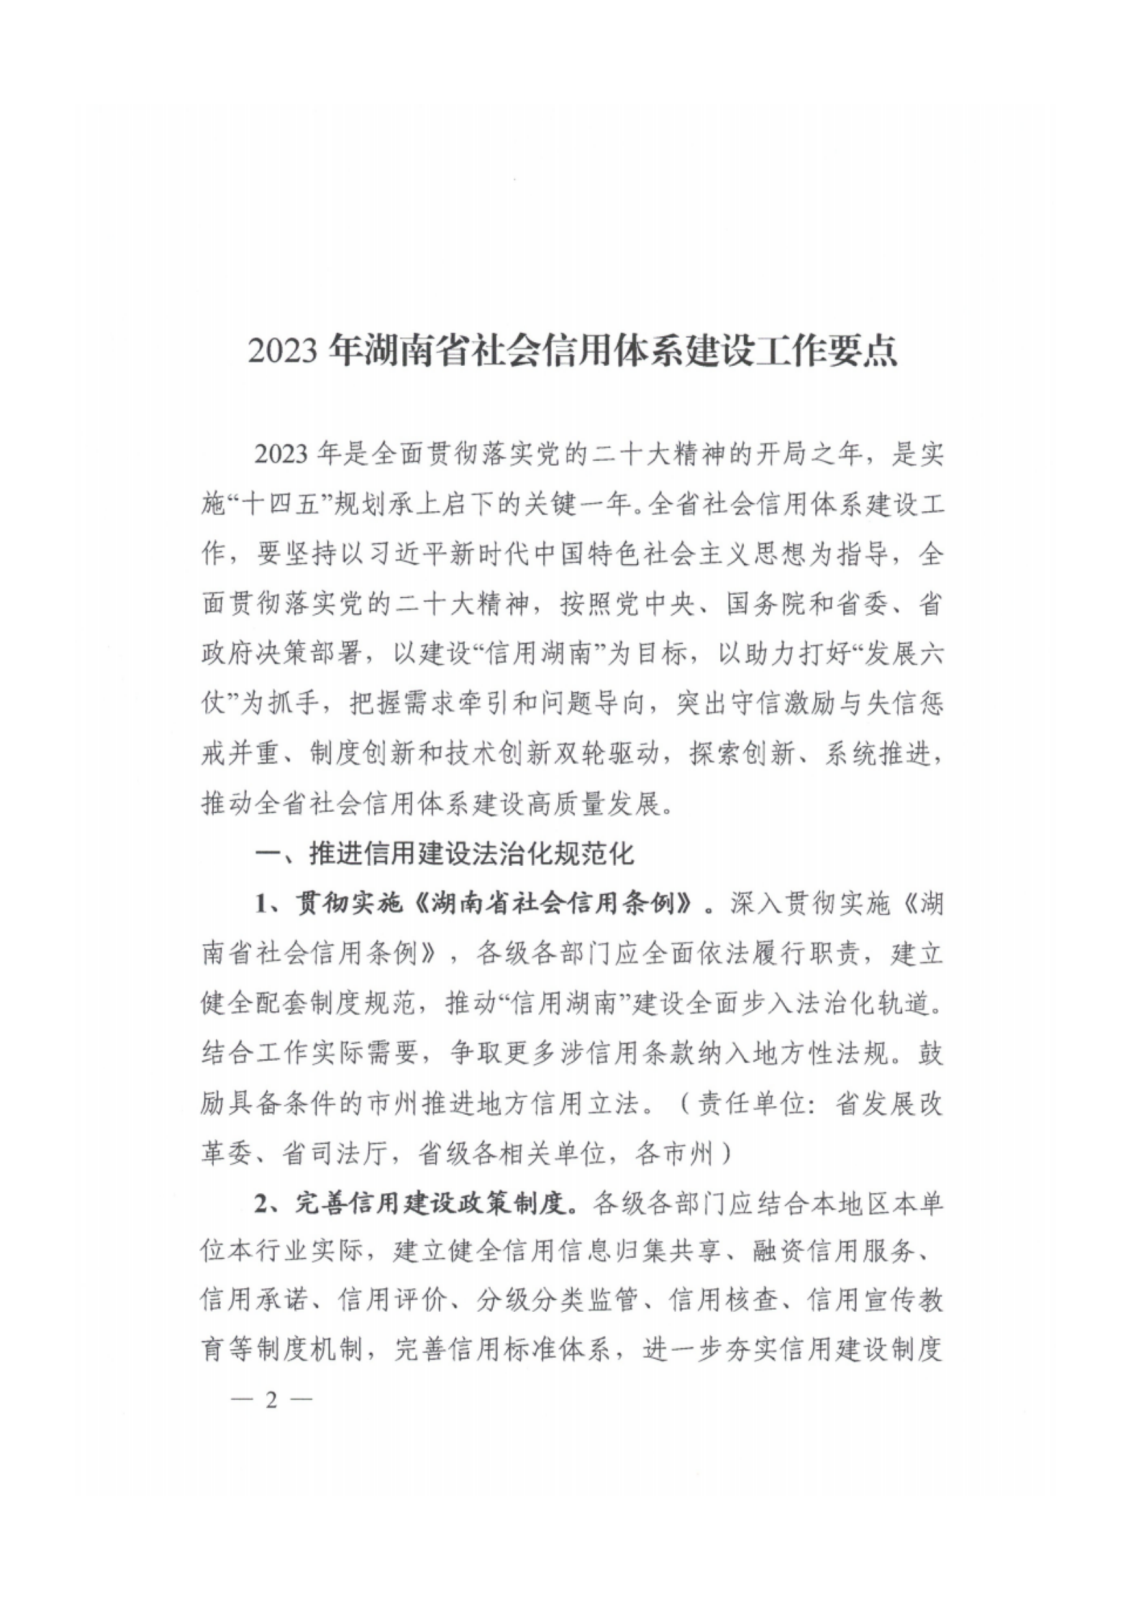 2023年湖南省社会信用体系建设工作要点_01.png